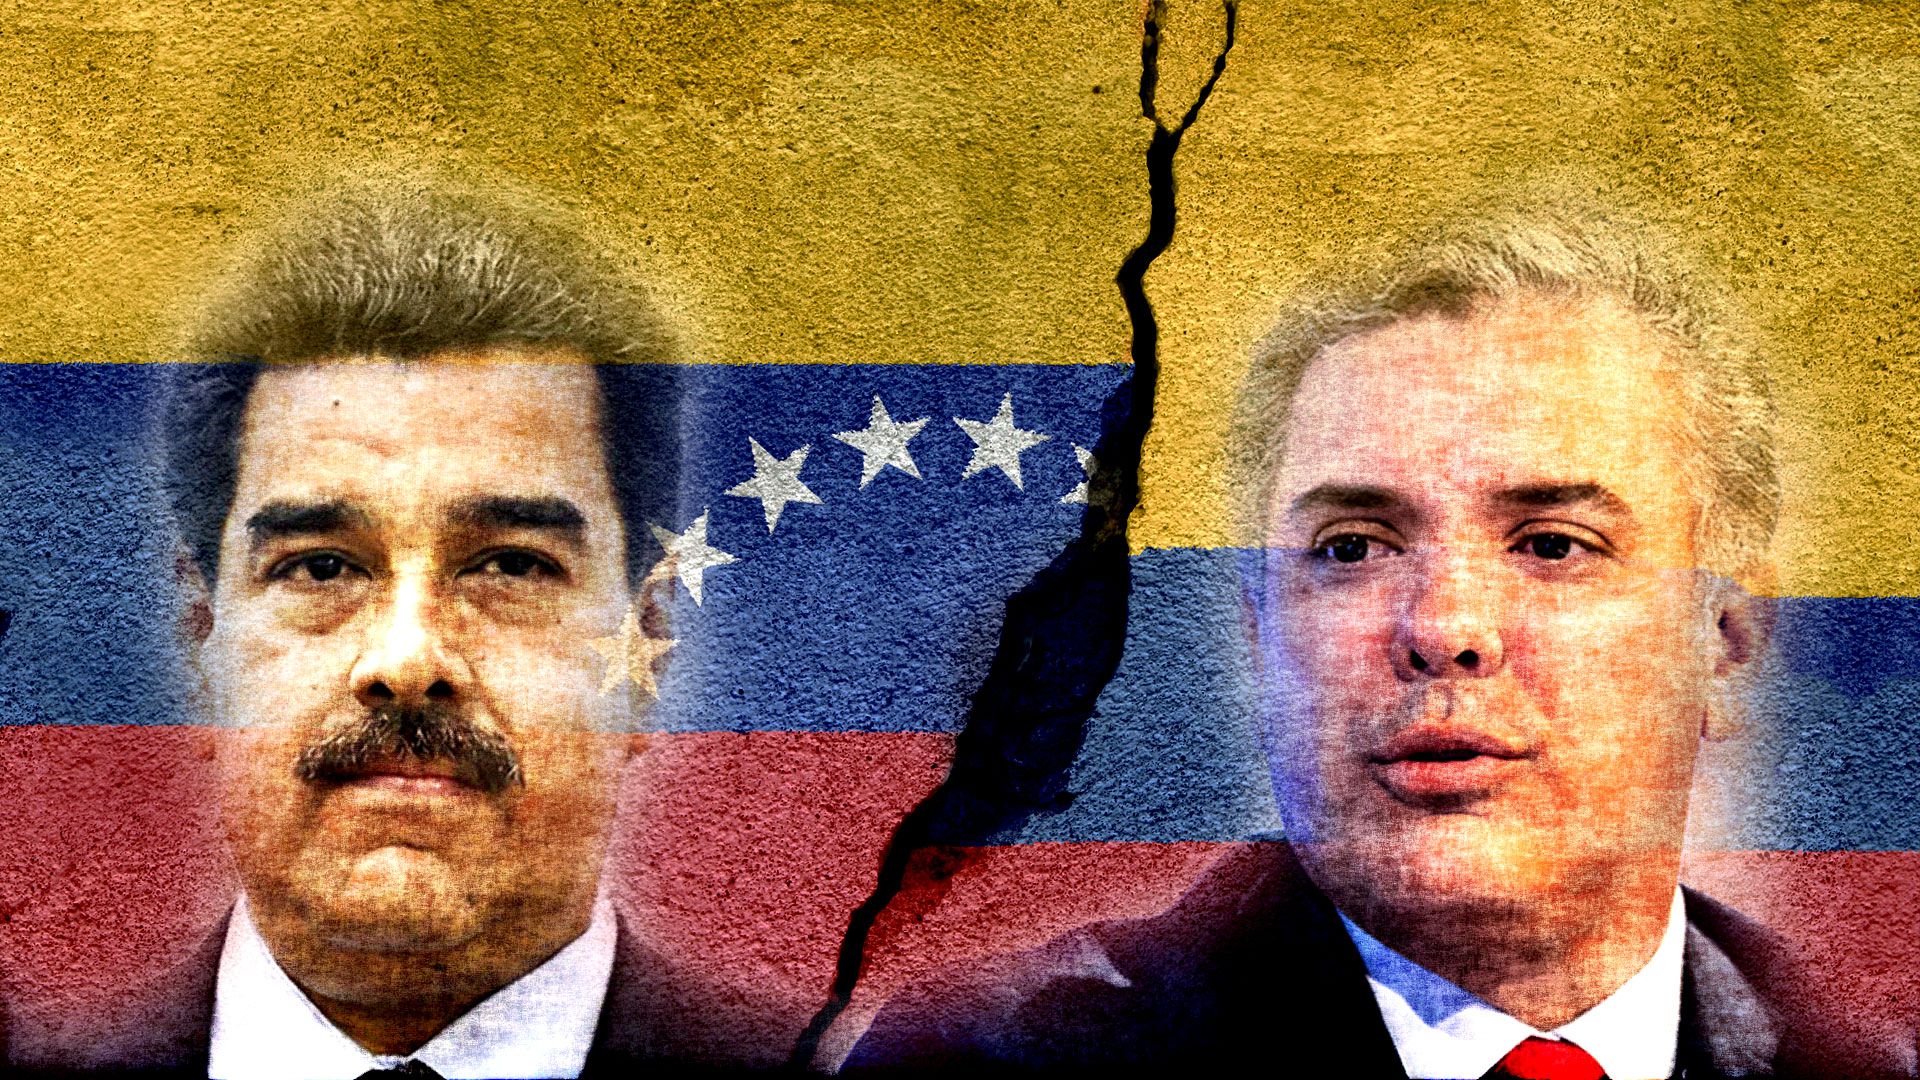 El dictador venezolano Nicolás Maduro y el presidente colombiano Iván Duque. El primero encabeza una peligrosa escalada en las tensiones entre ambos países